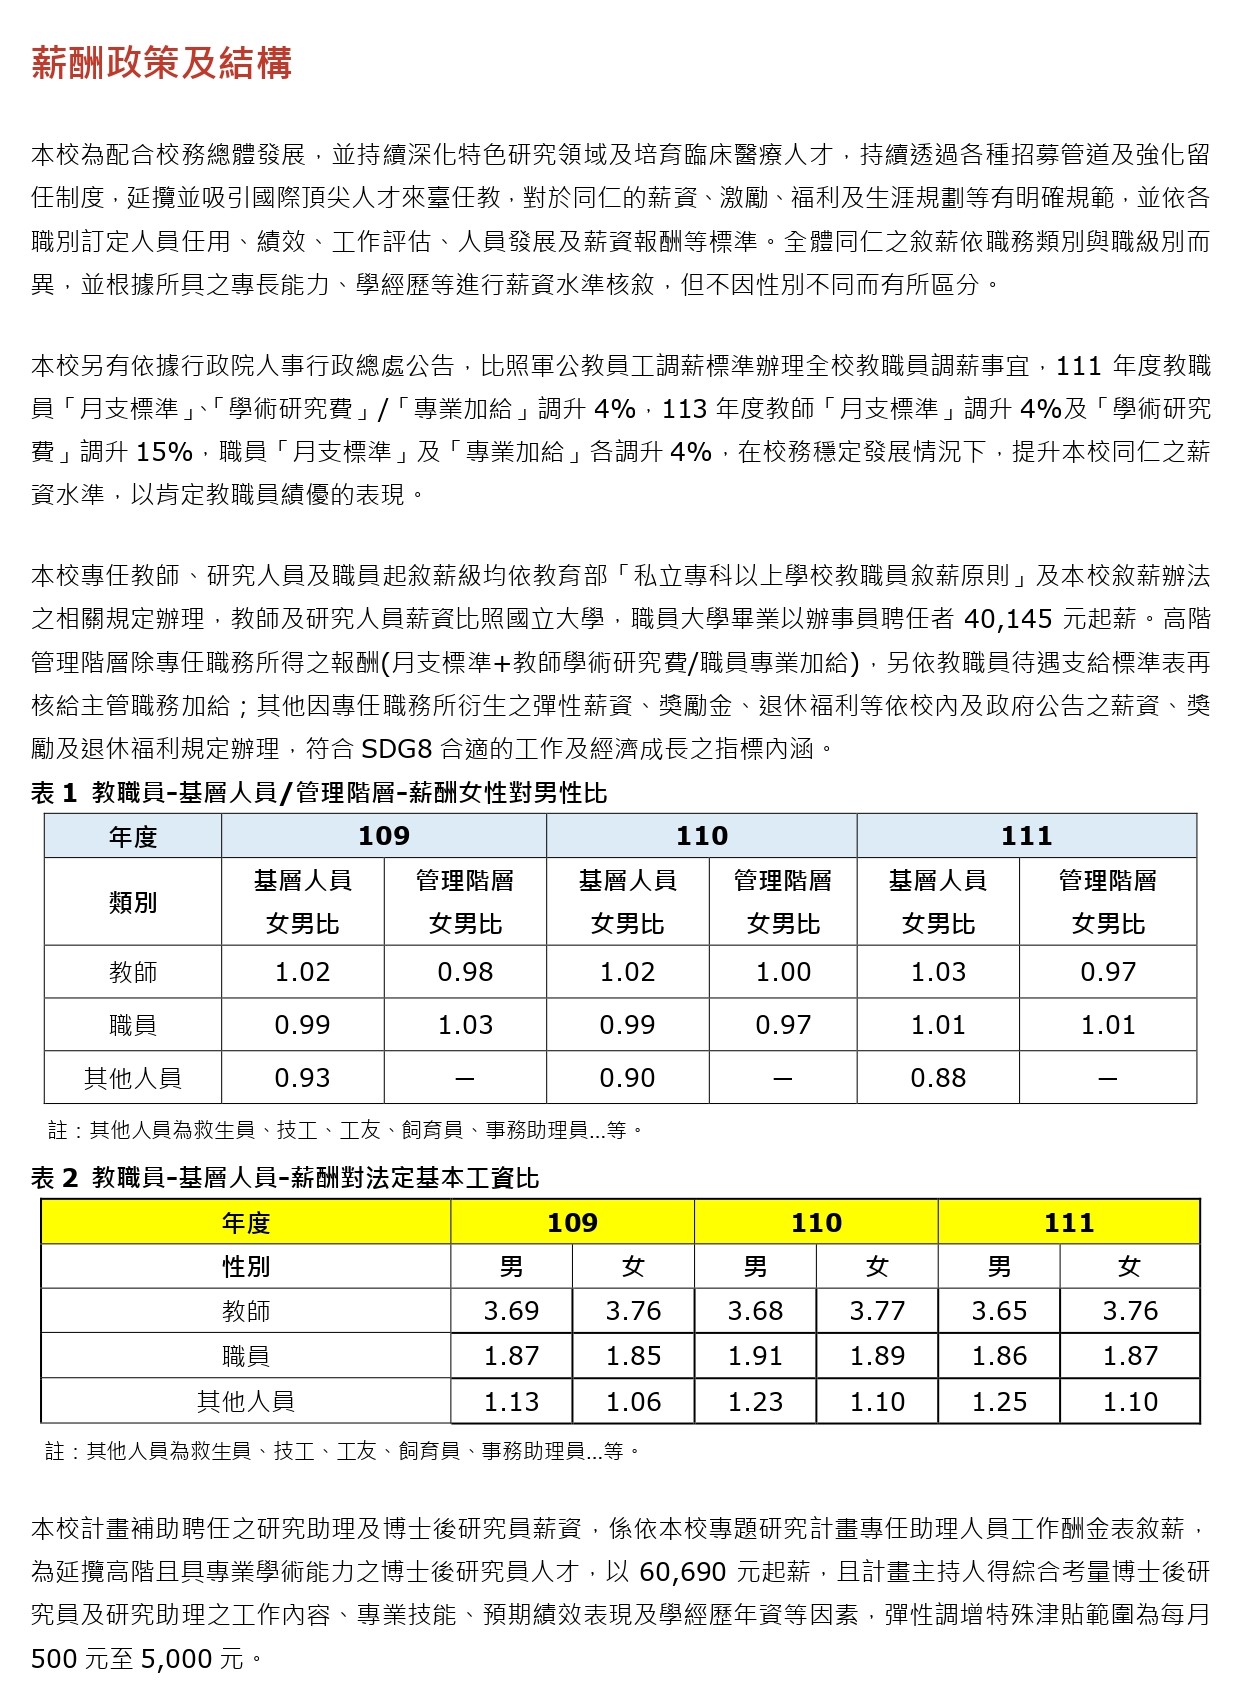 薪资及多元福利制度-for 网页- (中文) New_page-0001